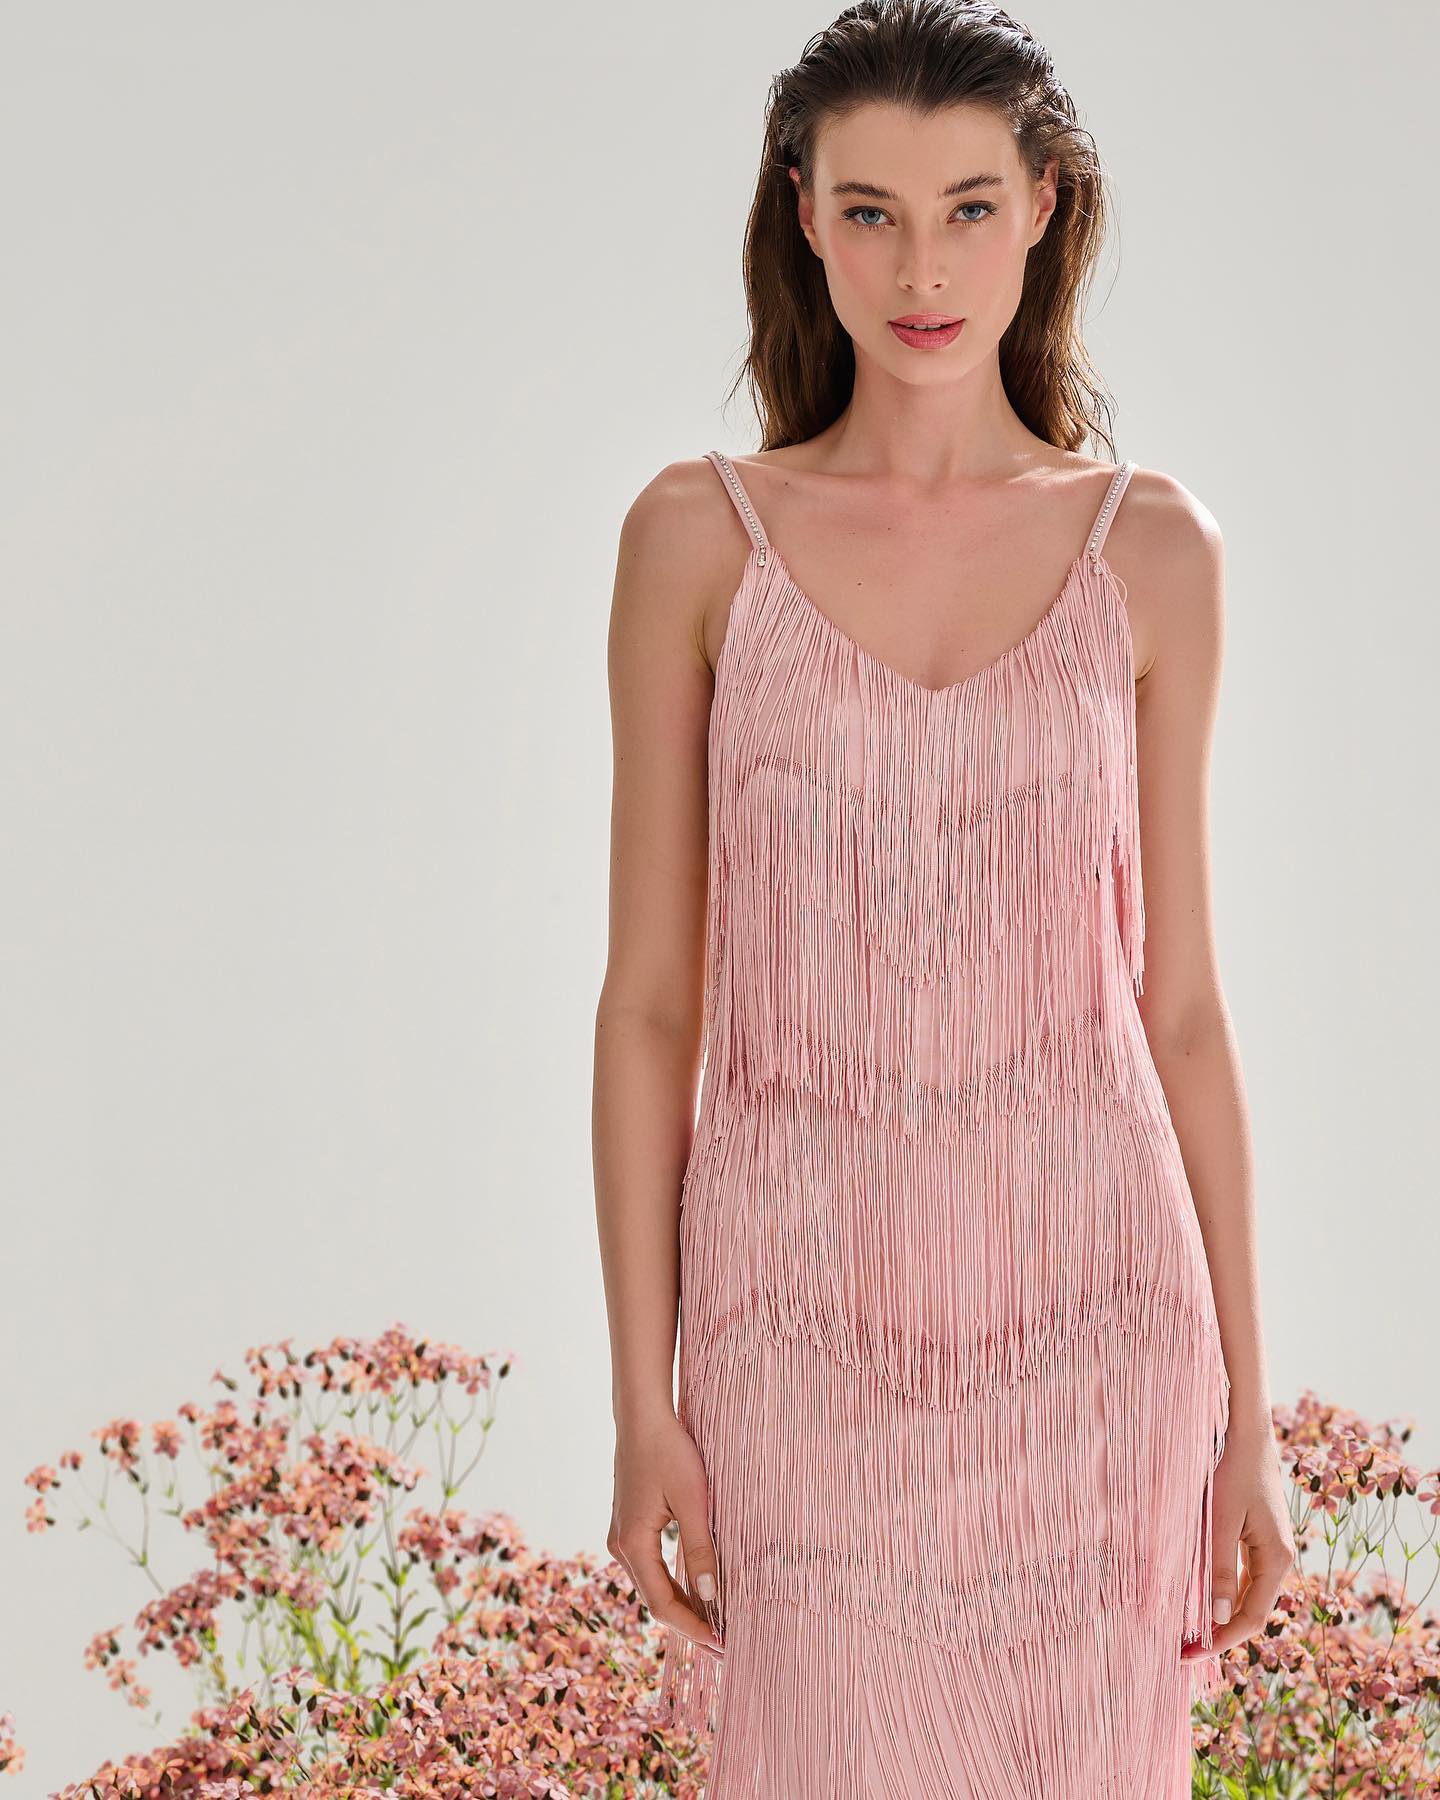 Найтрендовіші відтінки літа: сукню якого кольору варто додати до літнього гардеробу